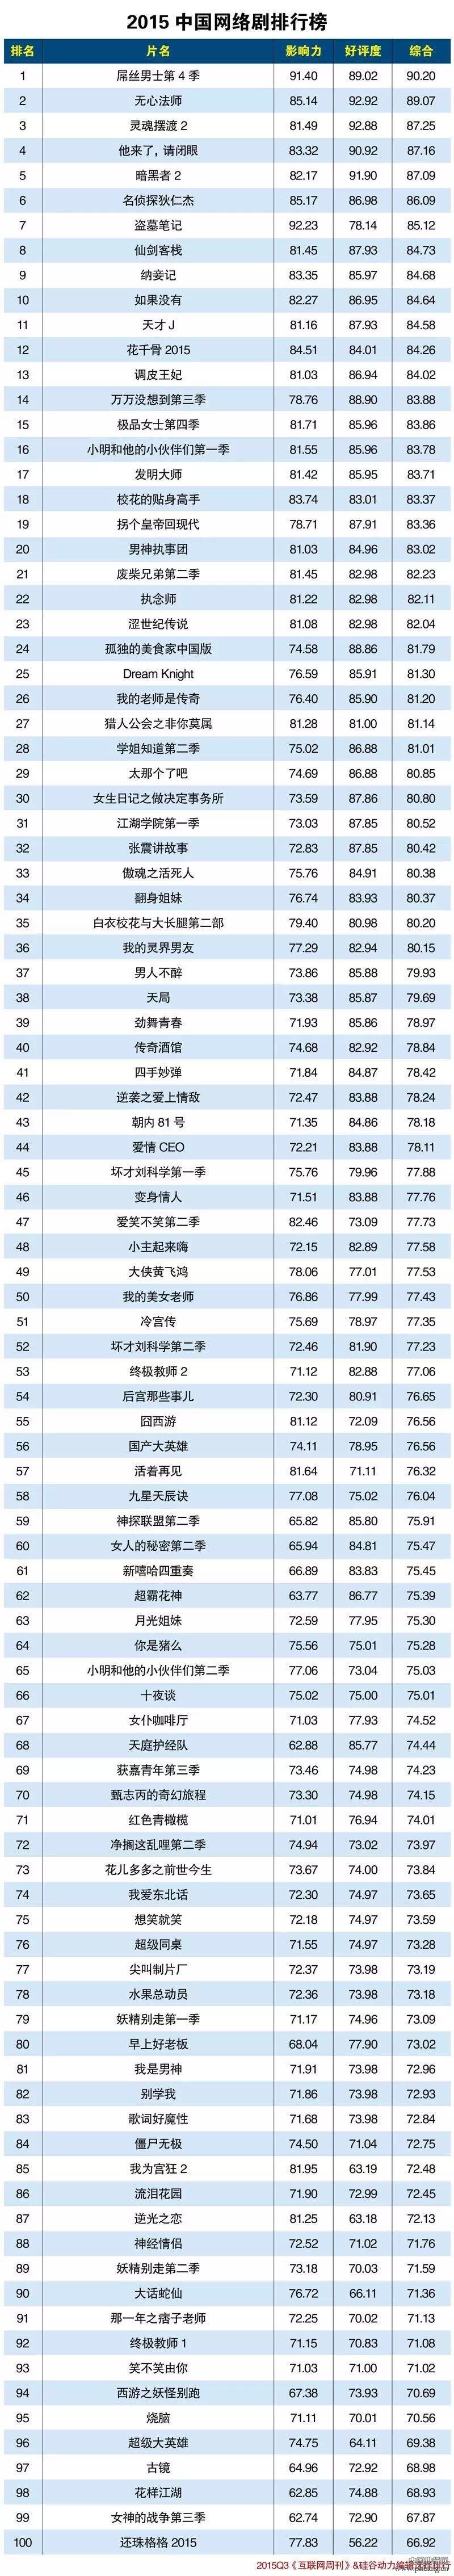 2015中国网络剧排行榜